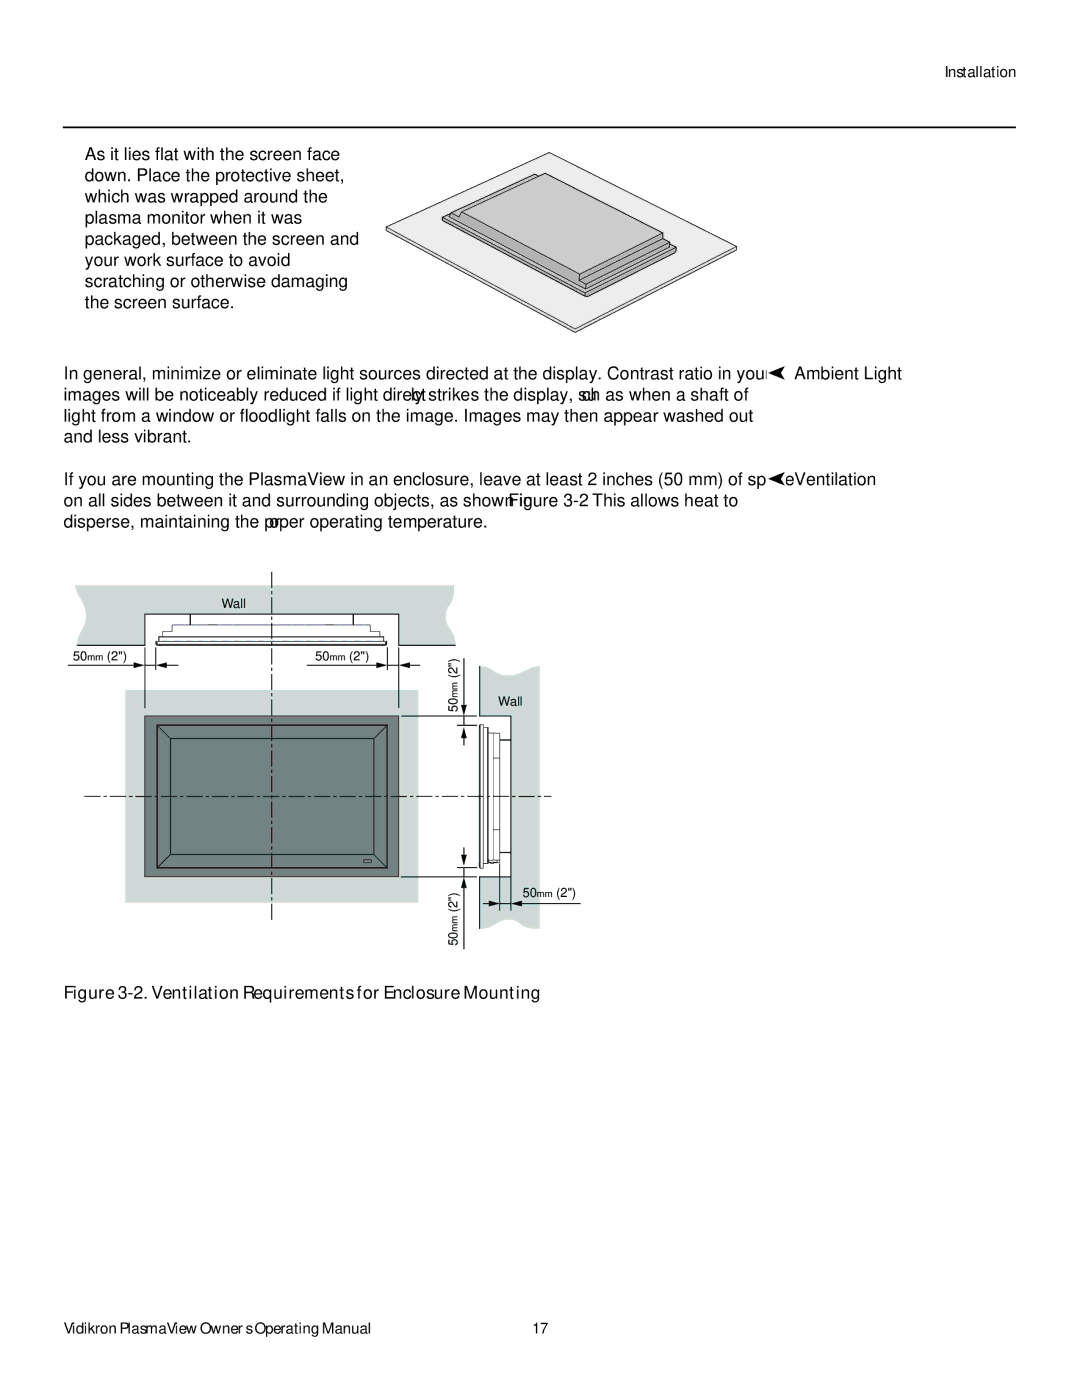 Vidikron VP-4200a, VP-6000a, VP-5000a manual Ventilation Requirements for Enclosure Mounting 